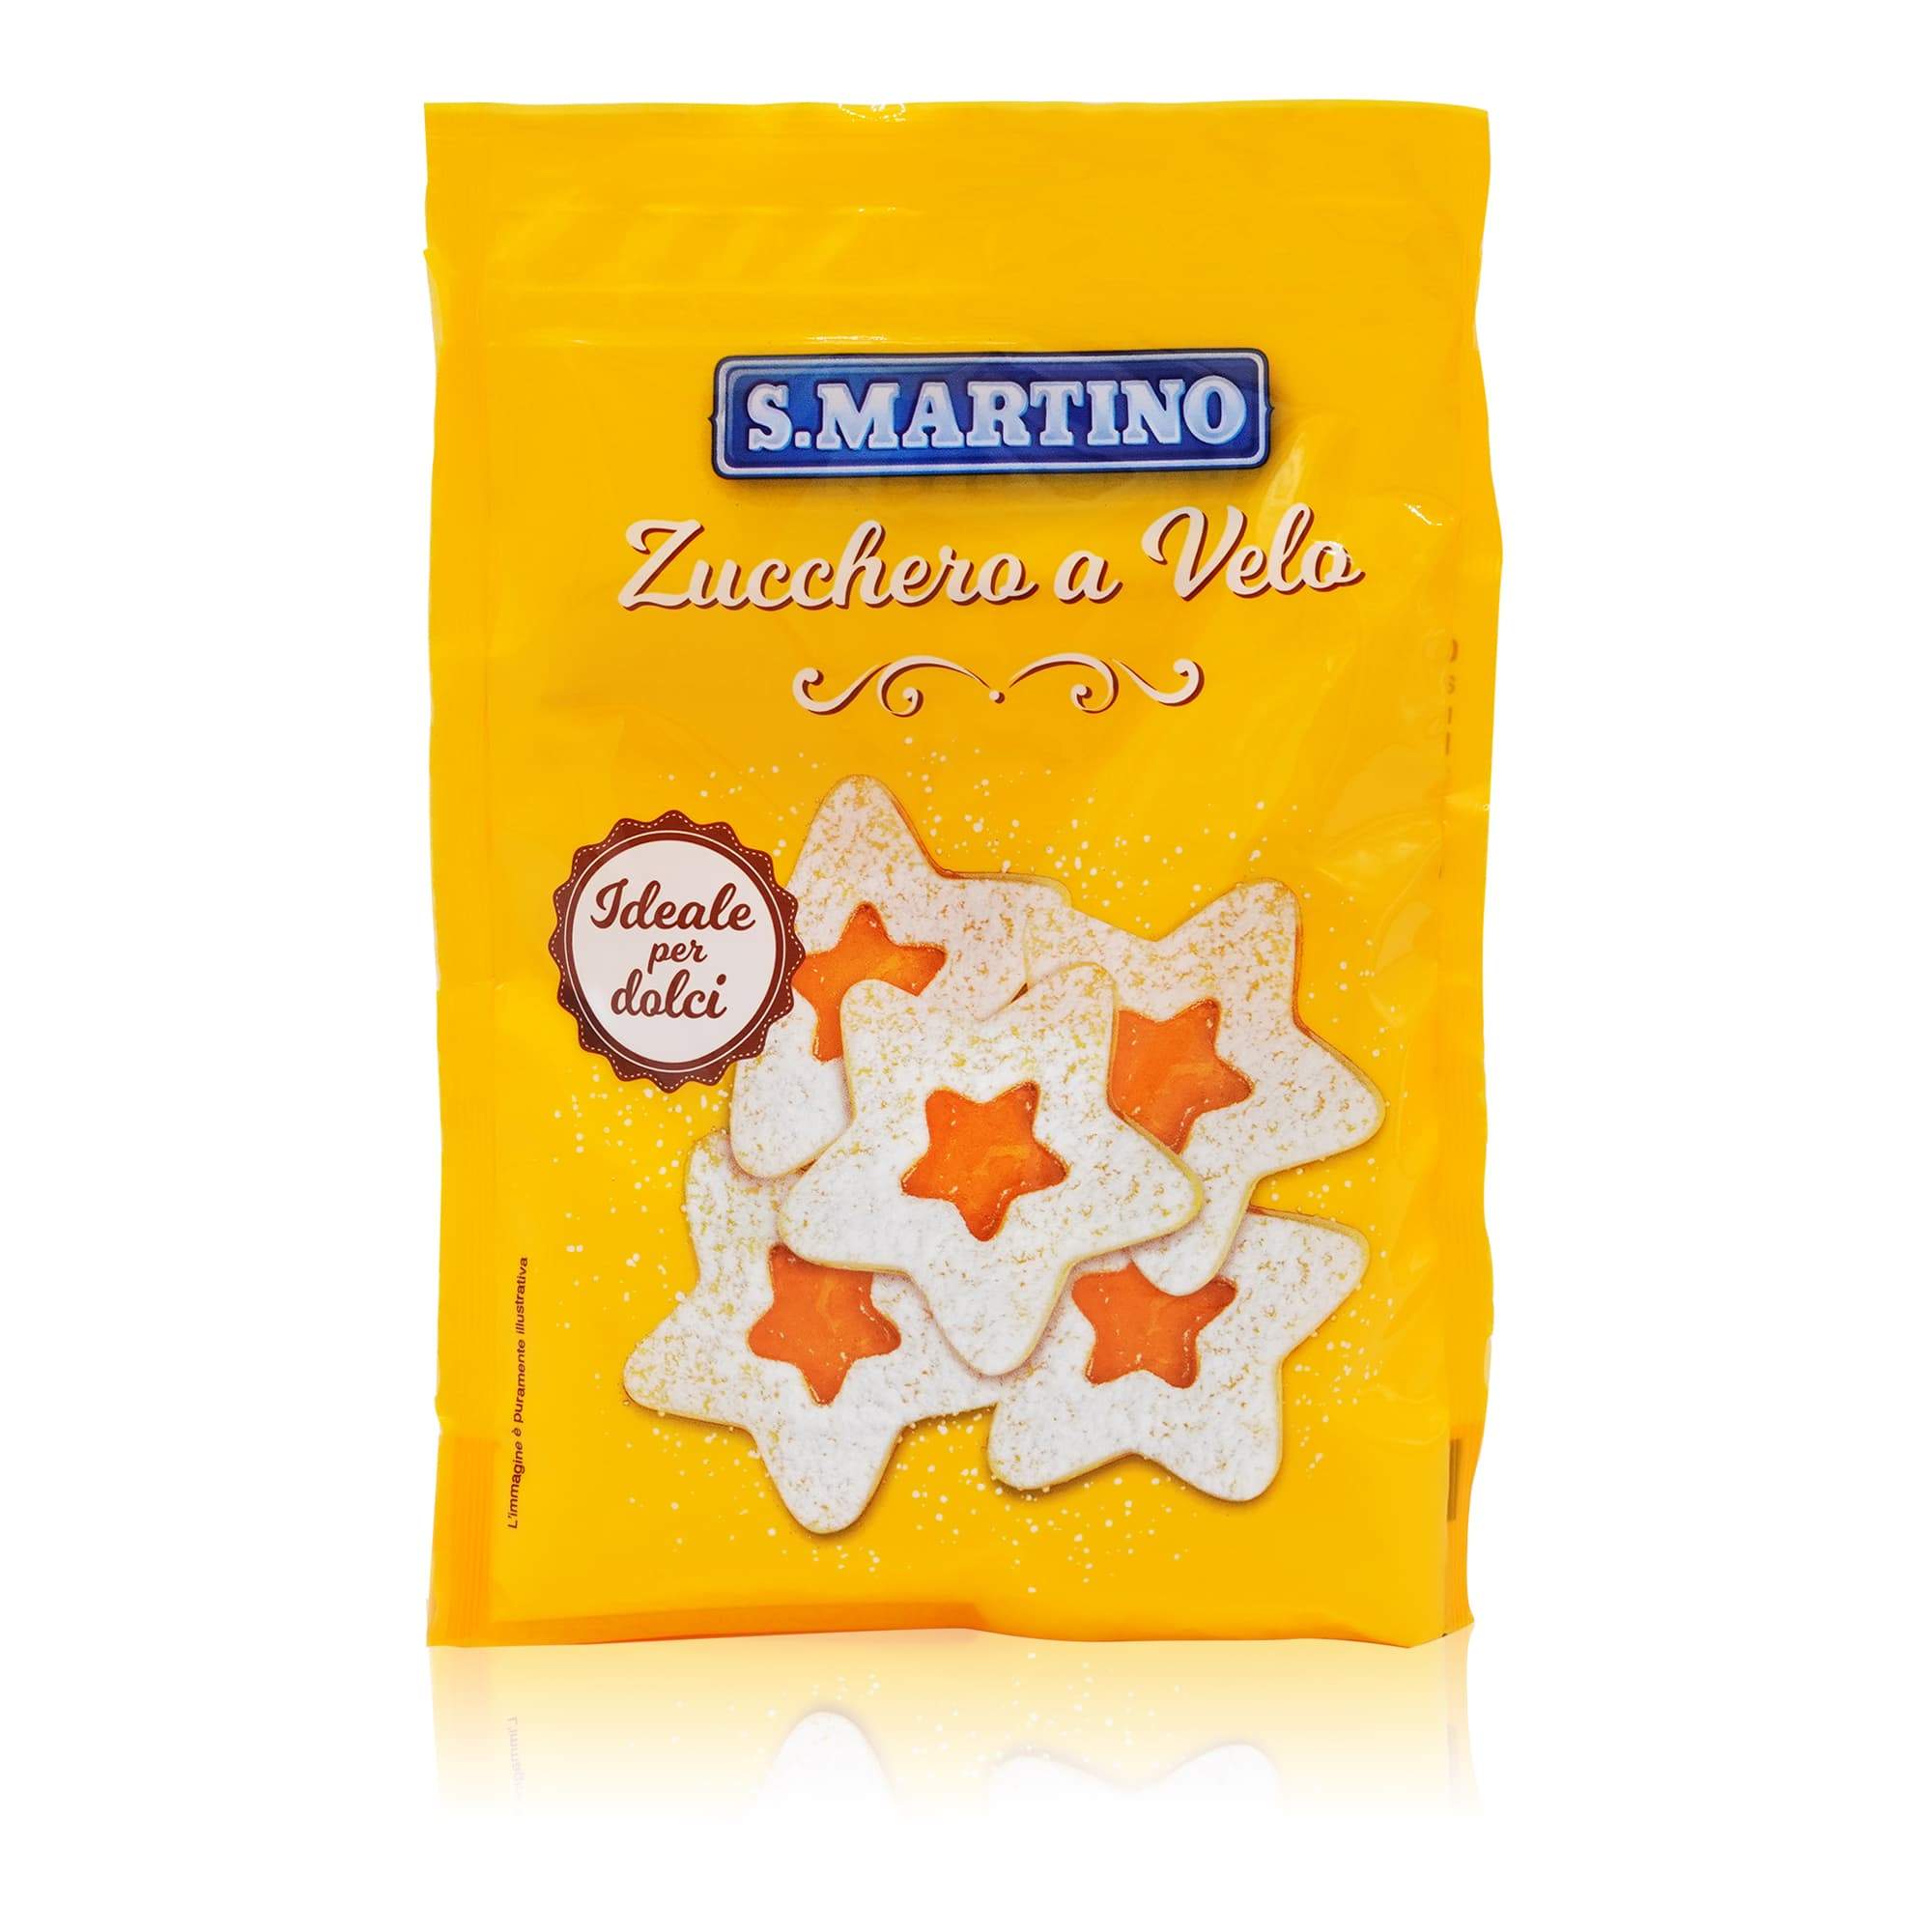 S. MARTINO Zucchero a Velo – Puderzucker - 0,125kg - italienisch-einkaufen.de